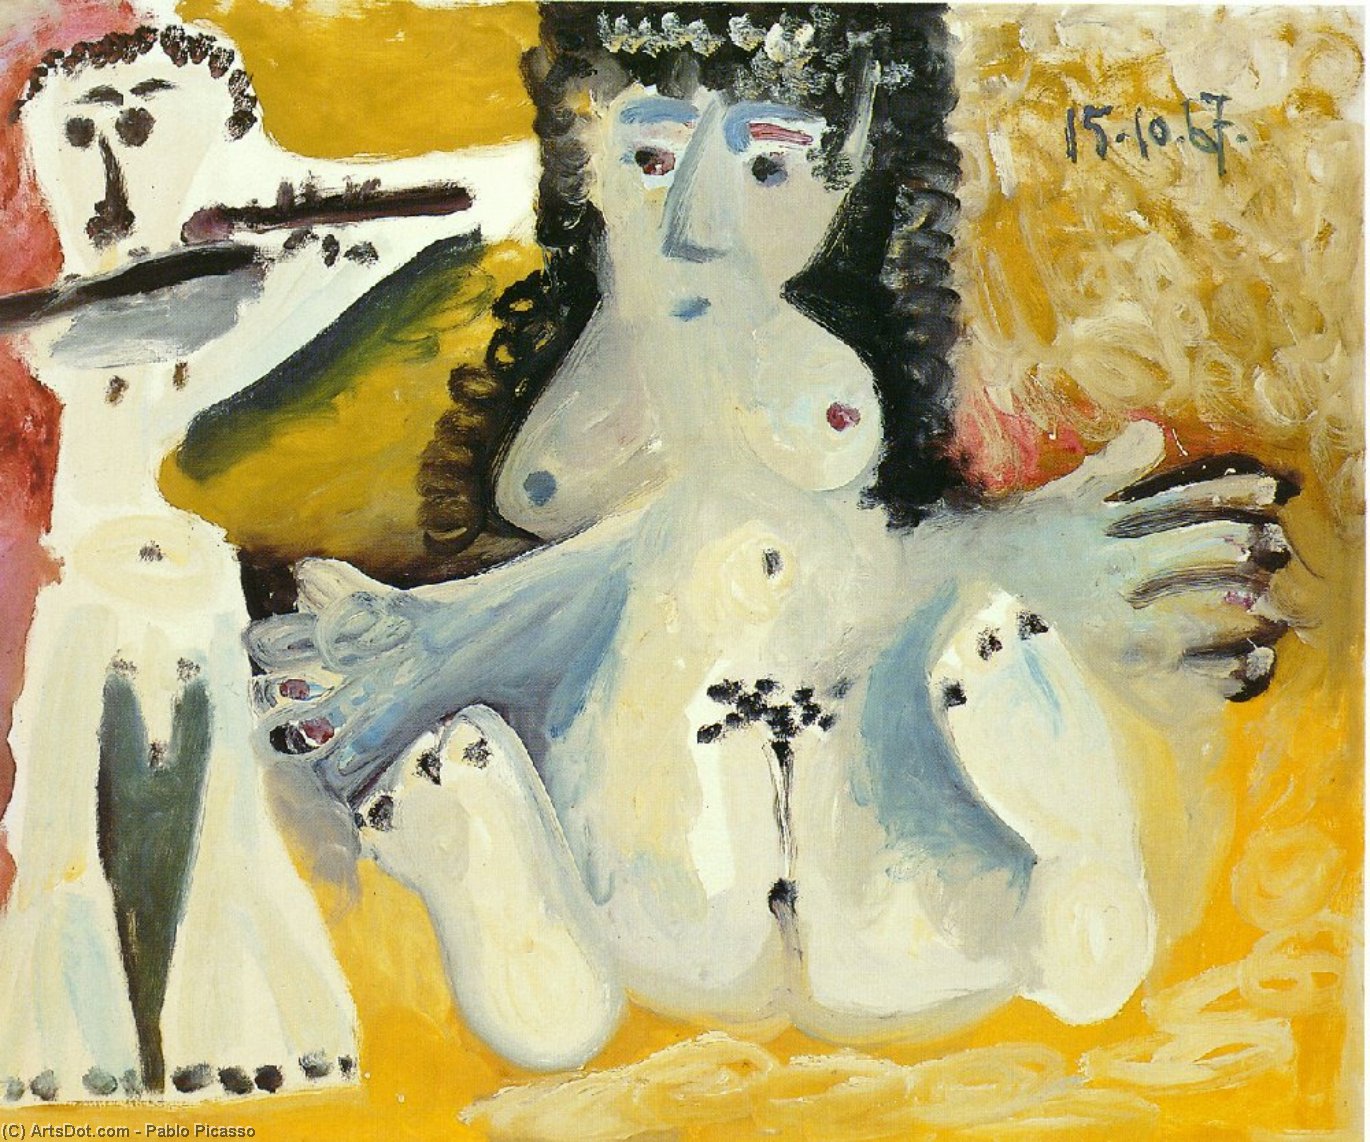 WikiOO.org - Энциклопедия изобразительного искусства - Живопись, Картины  Pablo Picasso - Сидящий мужчина игровое  флейта